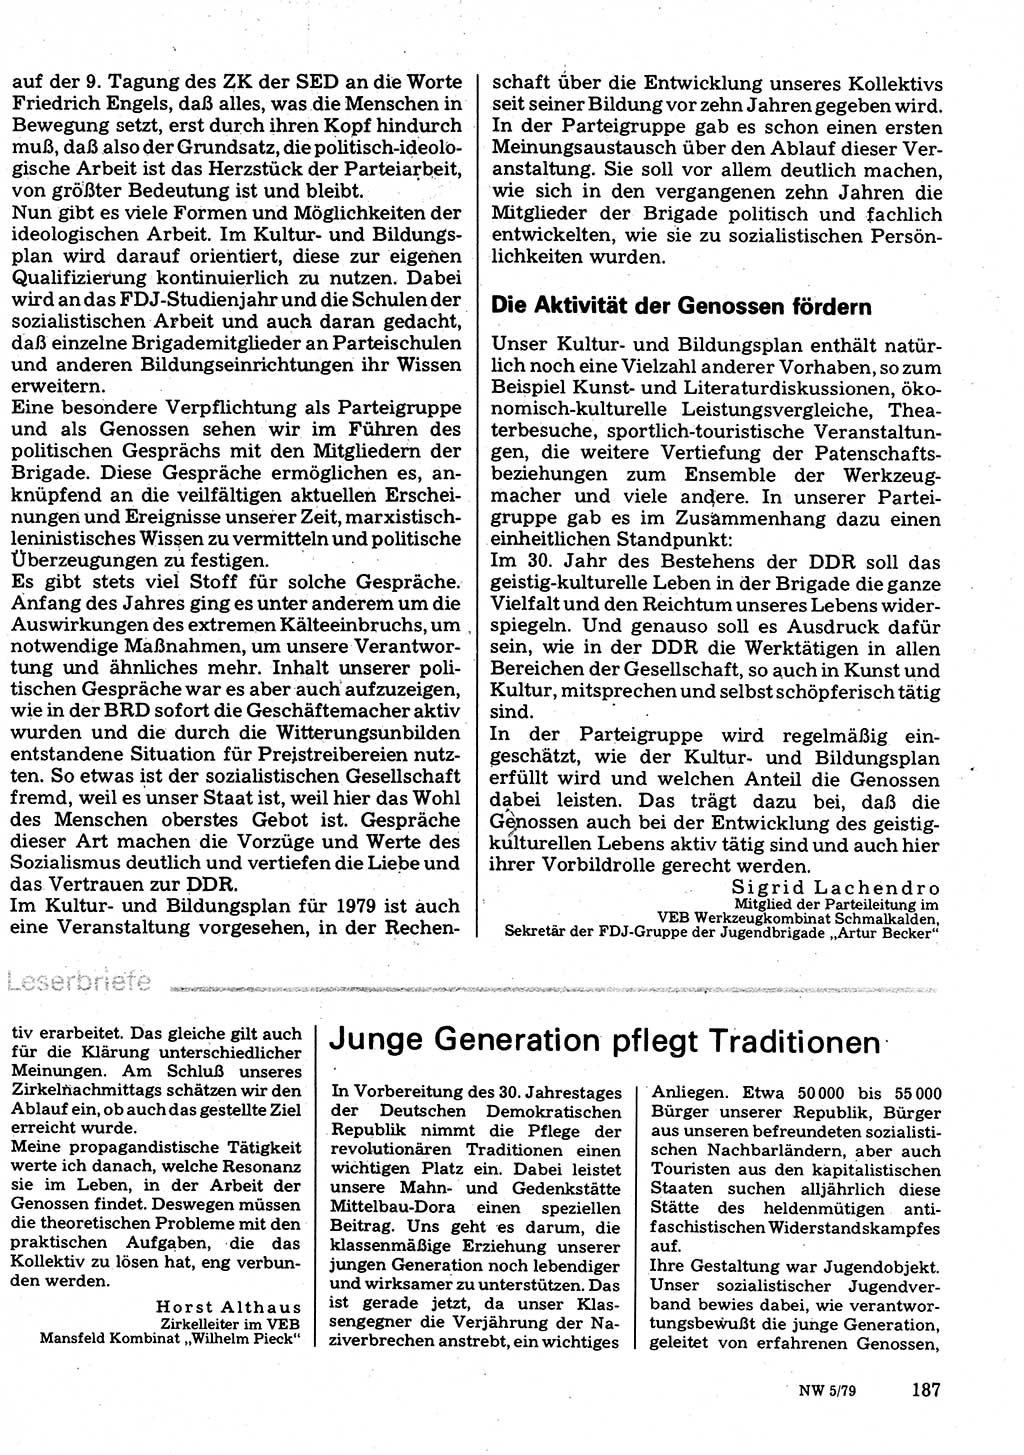 Neuer Weg (NW), Organ des Zentralkomitees (ZK) der SED (Sozialistische Einheitspartei Deutschlands) für Fragen des Parteilebens, 34. Jahrgang [Deutsche Demokratische Republik (DDR)] 1979, Seite 187 (NW ZK SED DDR 1979, S. 187)